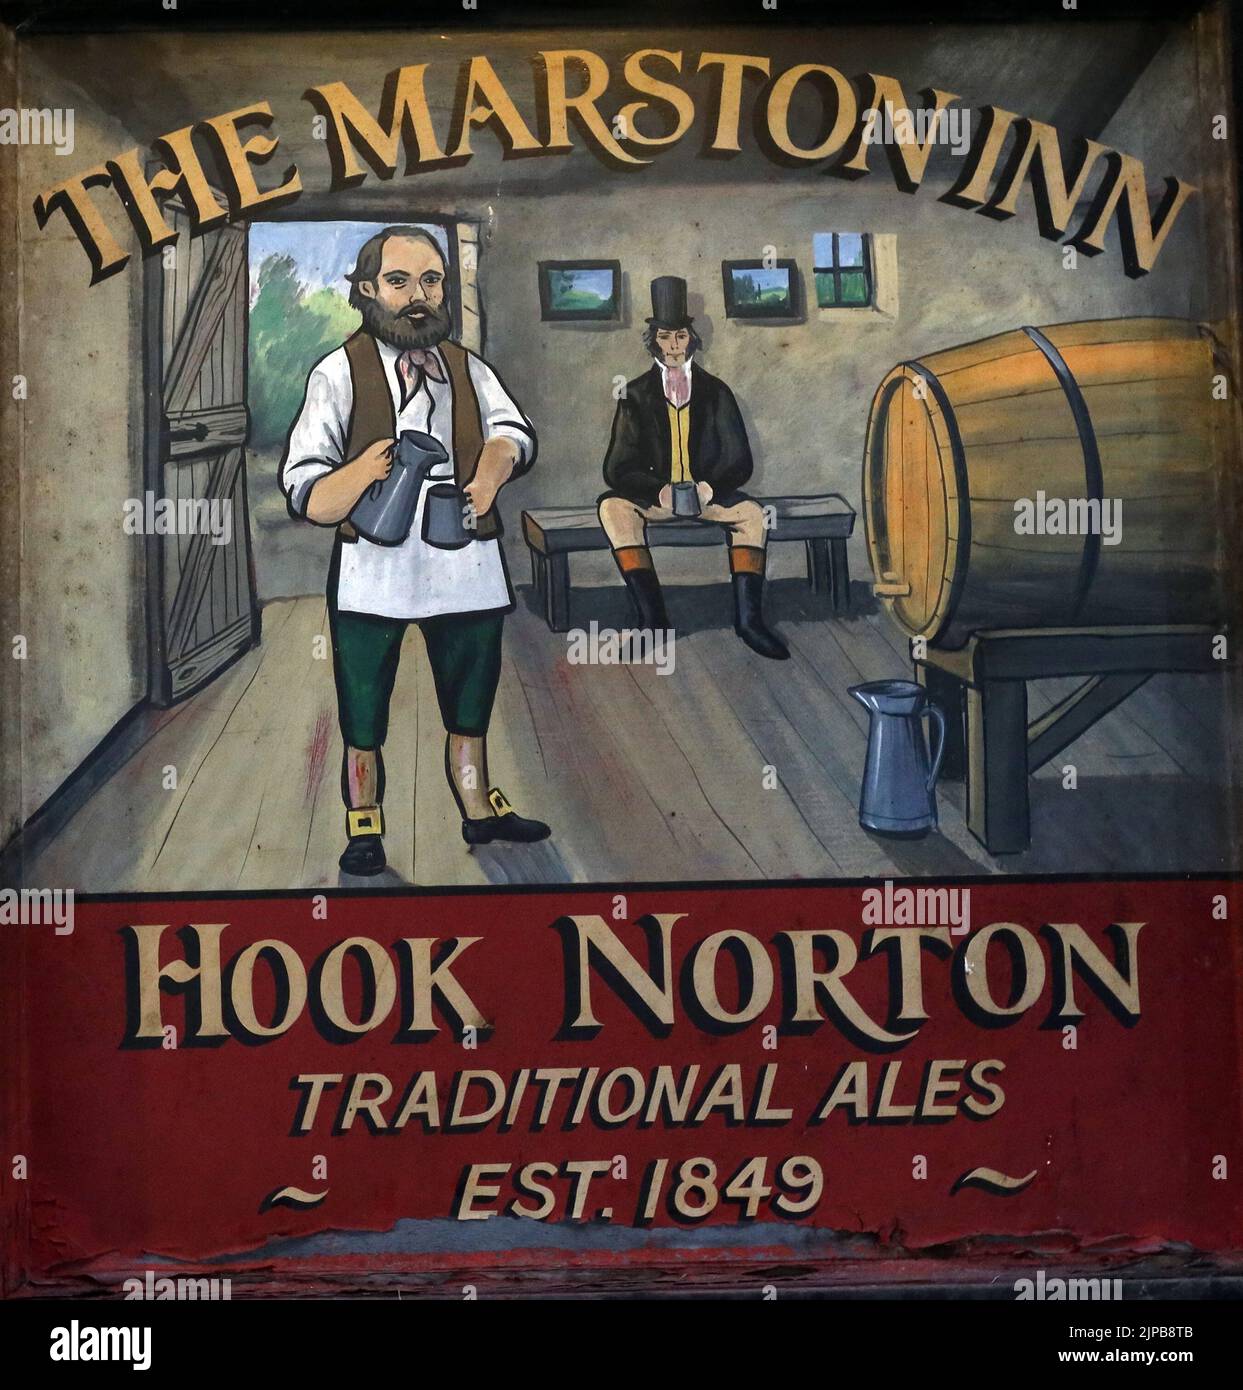 The Marston Inn - Hook Norton Ales panneau de pub classique, Oxfordshire Craft ales, Hook Norton, Banbury, Oxen, Angleterre, Royaume-Uni, OX15 5NY, est 1849 Banque D'Images